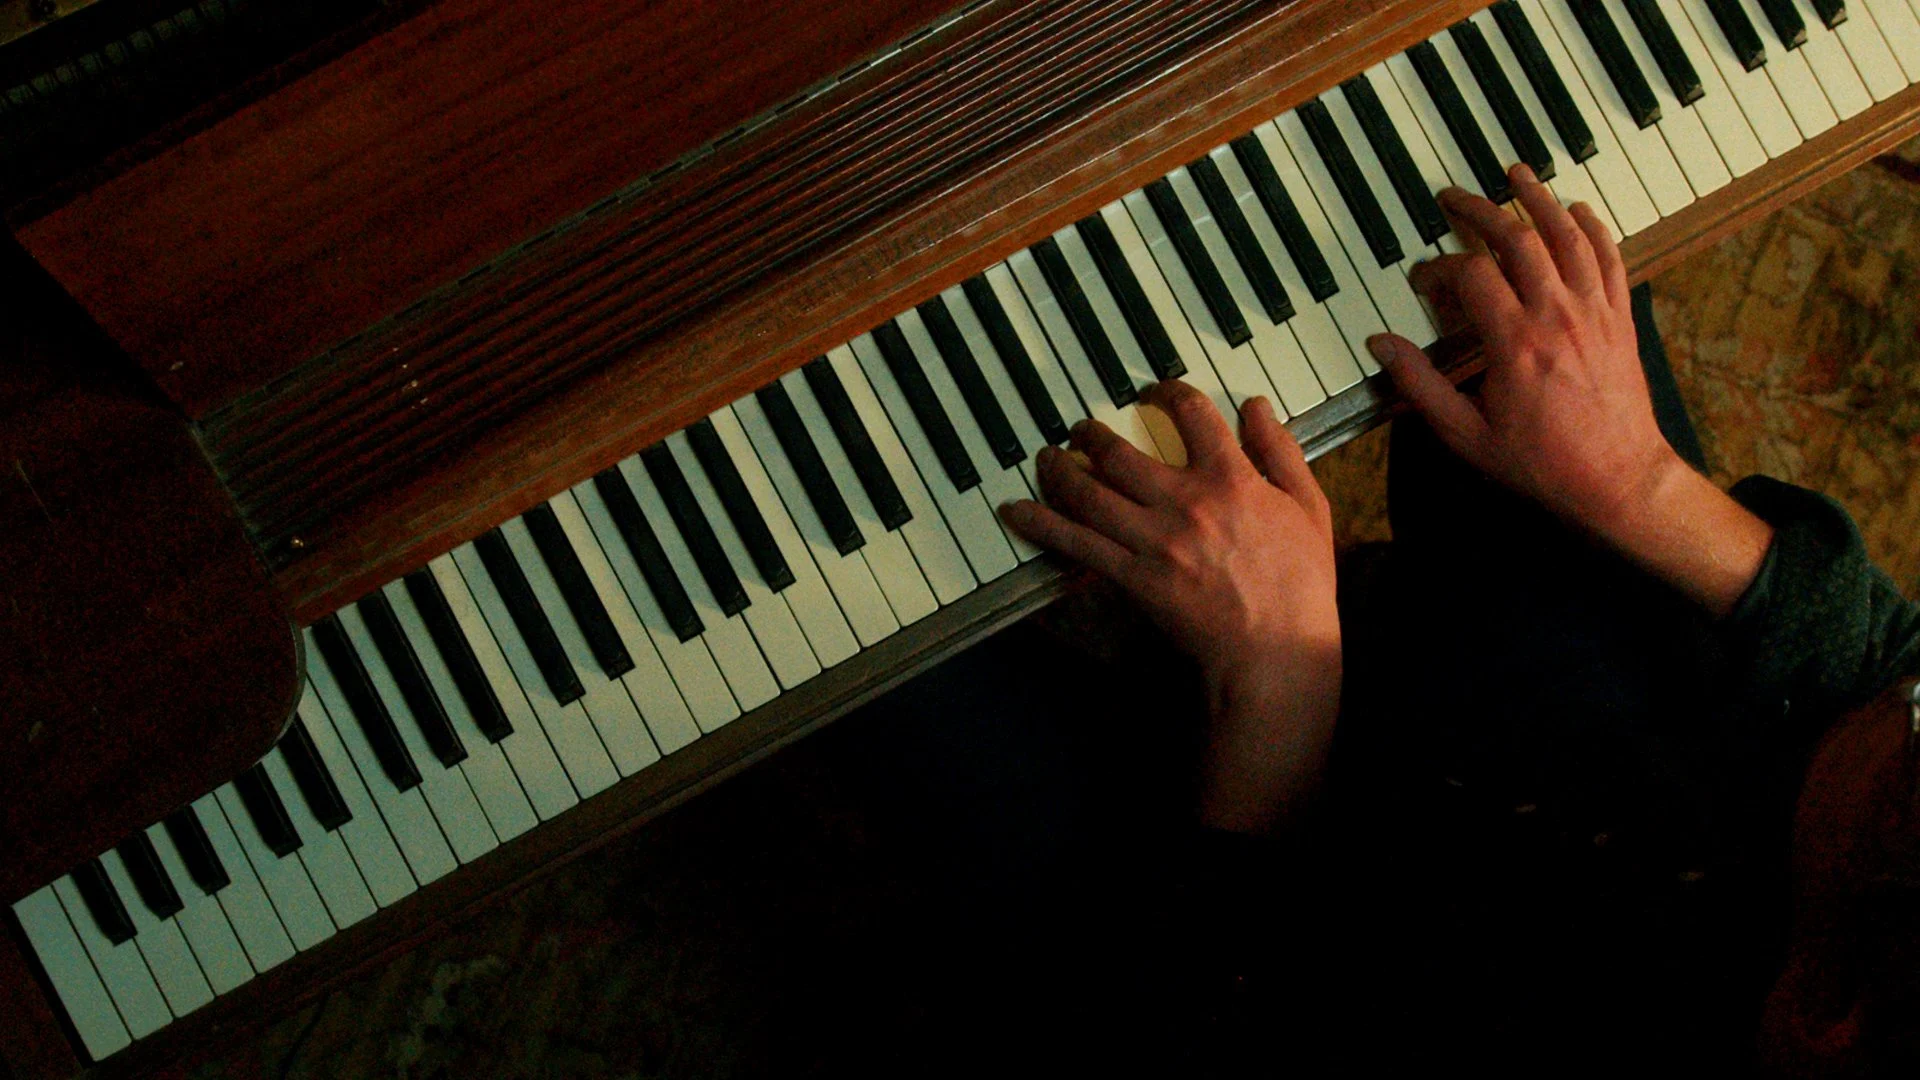 آموزش سطح بالا در پیانو: آهنگسازی و بداهه نوازی